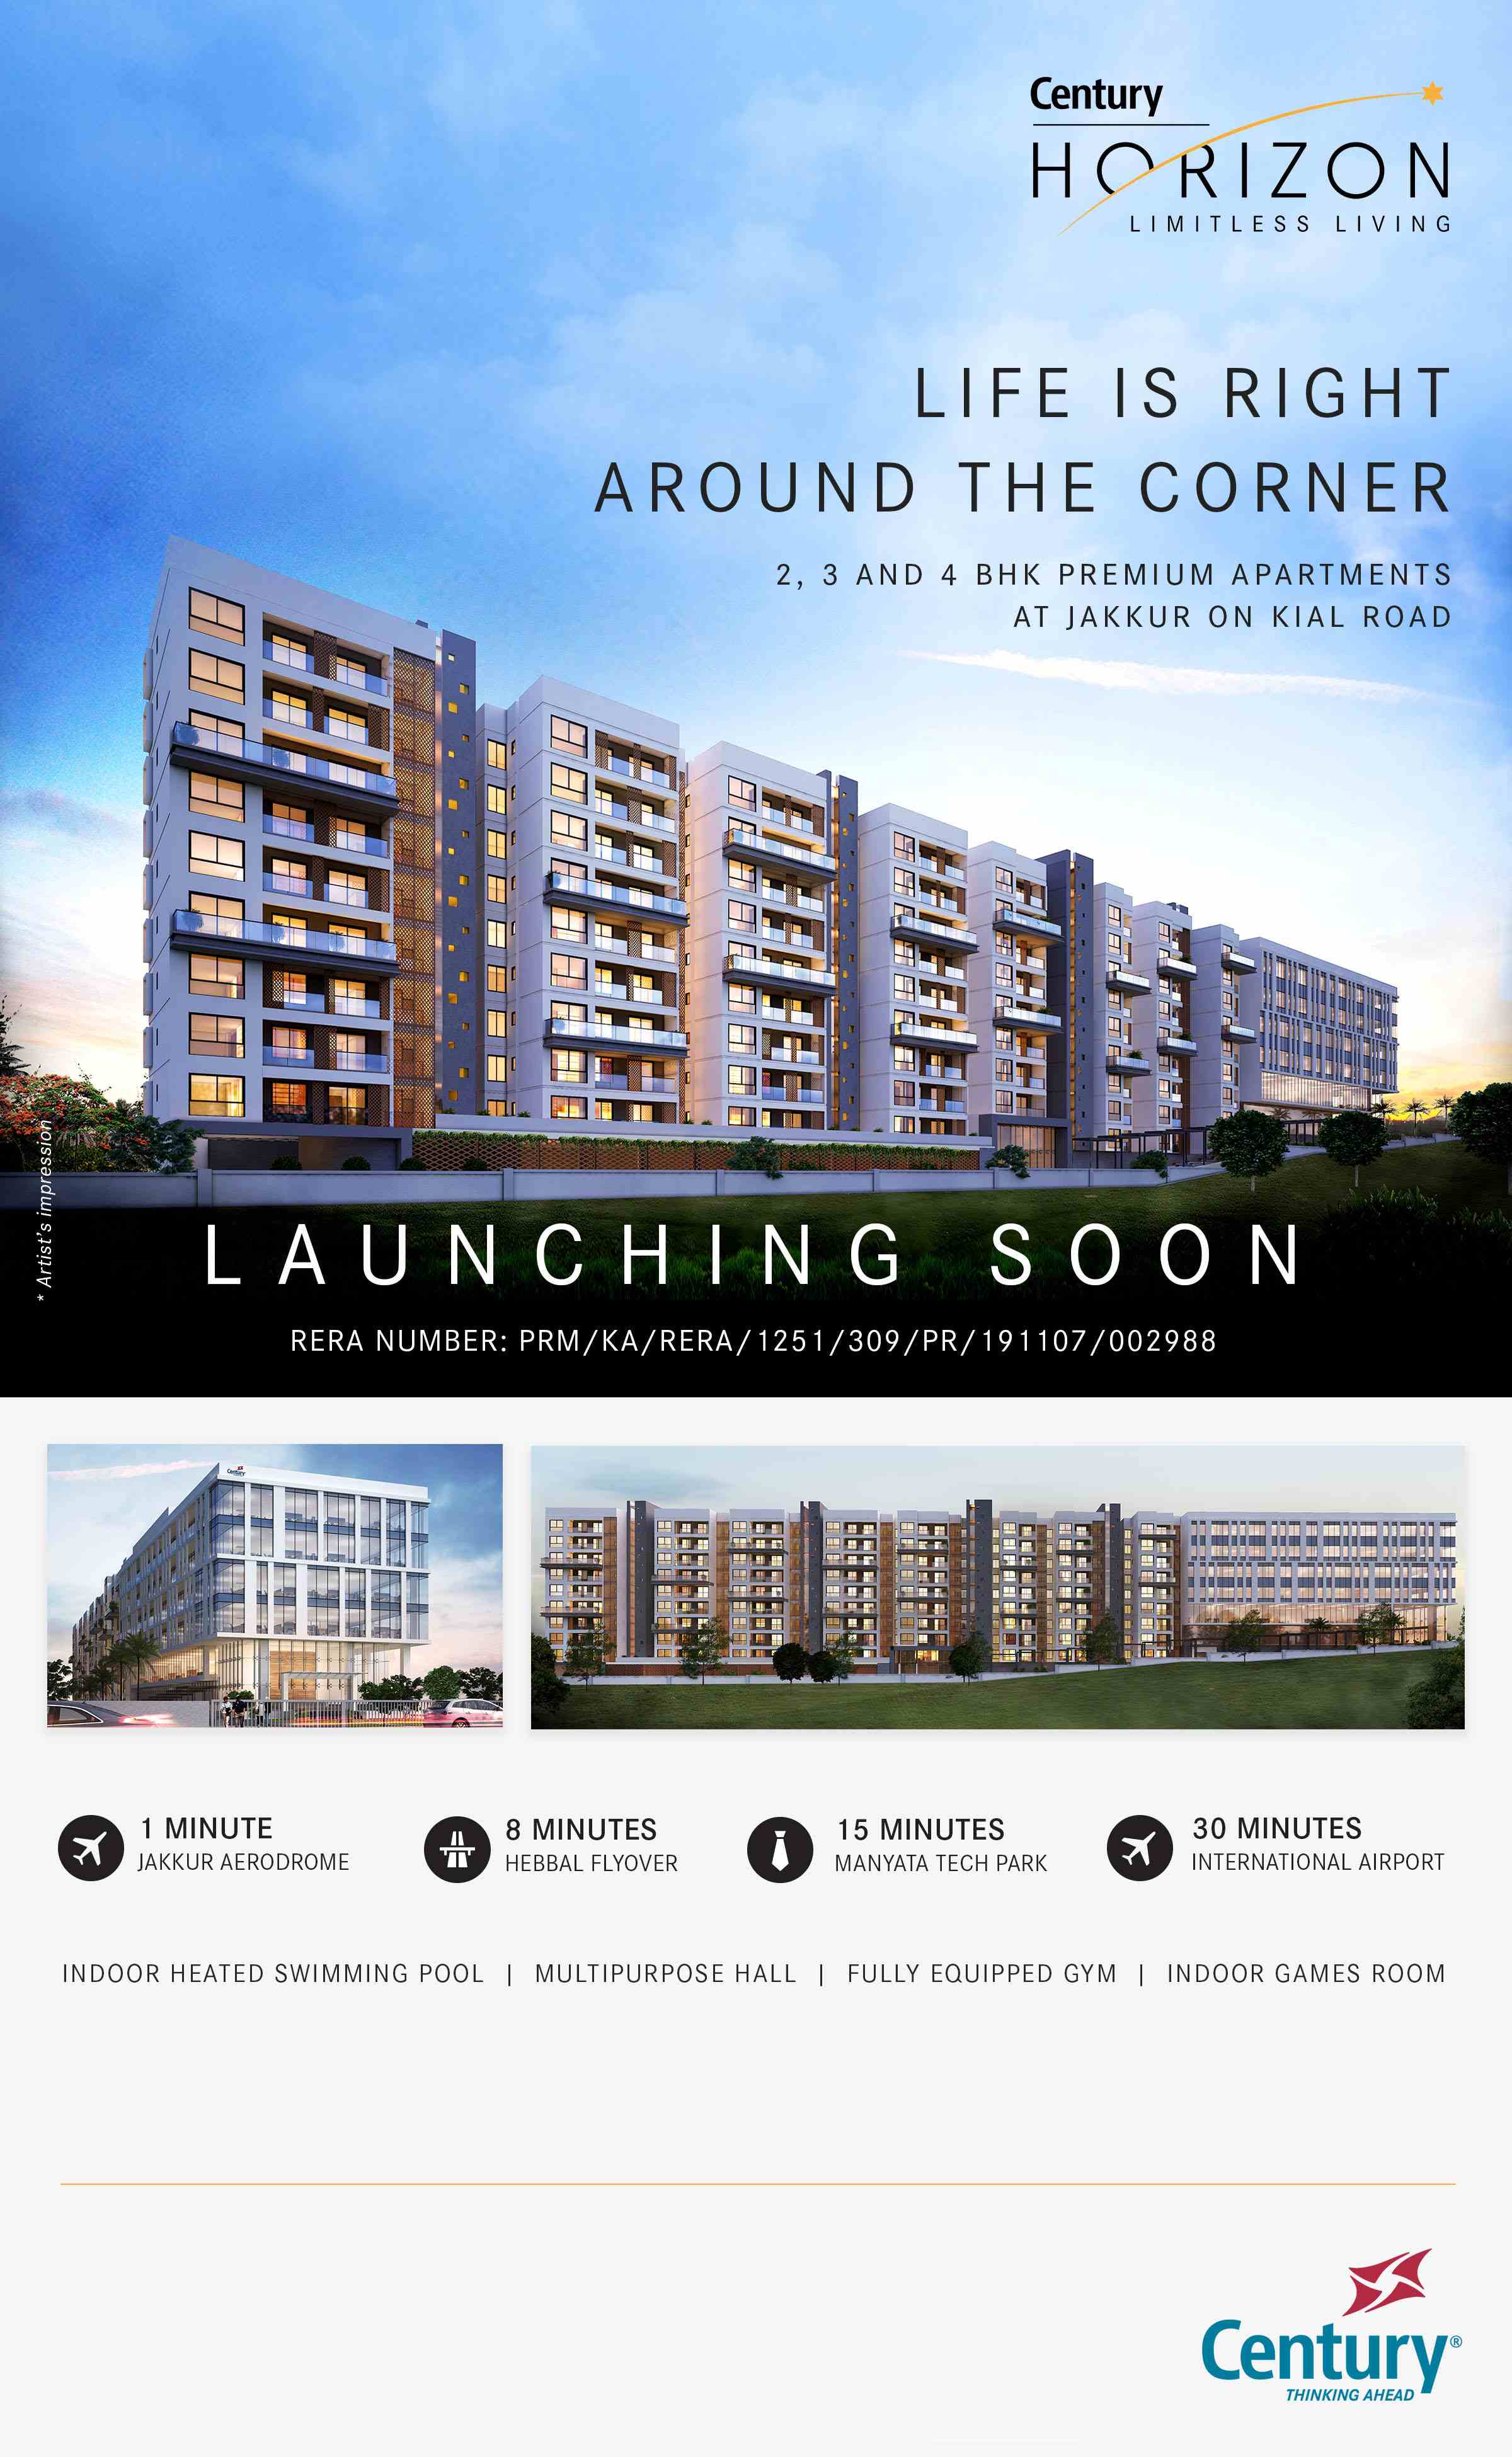 Launching soon 2, 3 and 4 BHK premium apartments at Century Horizon, Bangalore Update